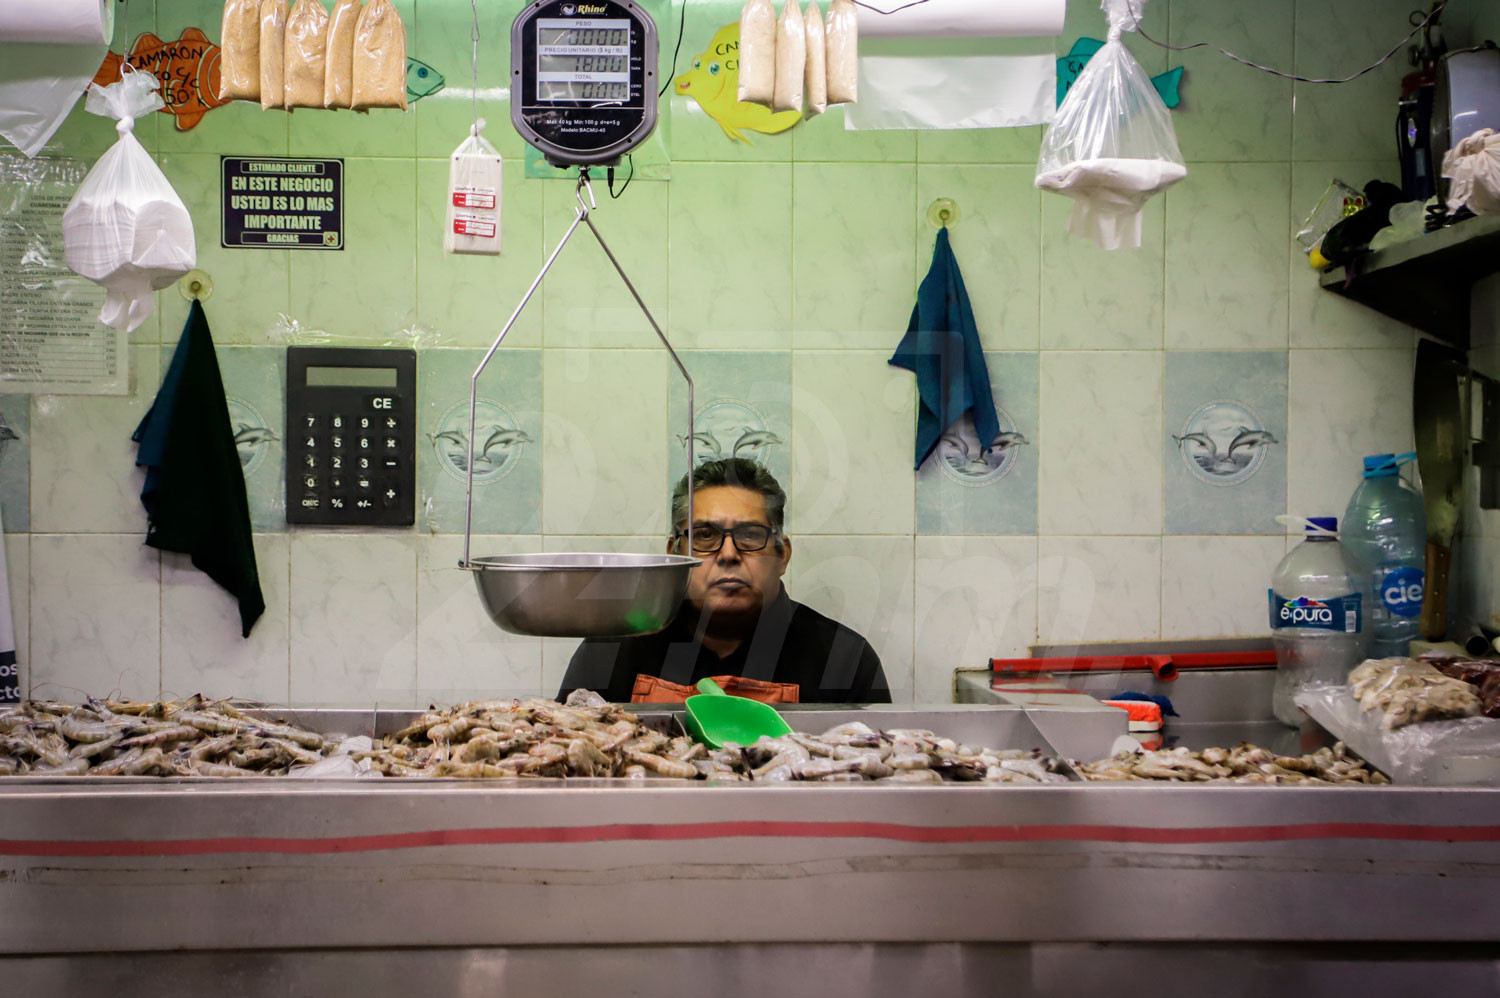 Bajas ventas en pescados y mariscos | Agencia 24mm